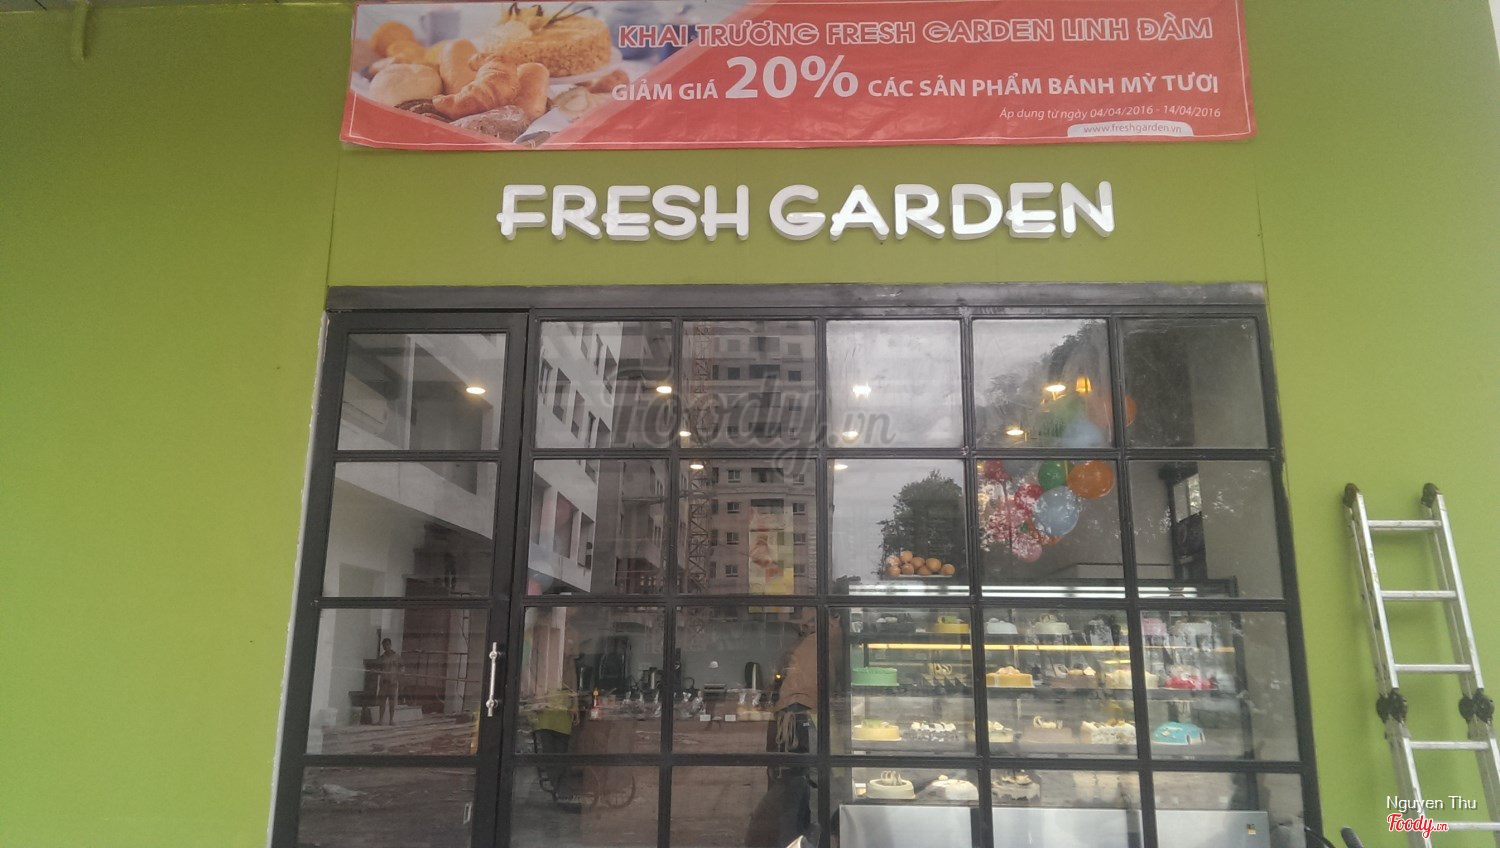 Fresh Garden Bakery - Linh Đàm Ở Quận Hoàng Mai, Hà Nội | Album Không Gian  | Fresh Garden Bakery - Linh Đàm | Foody.Vn